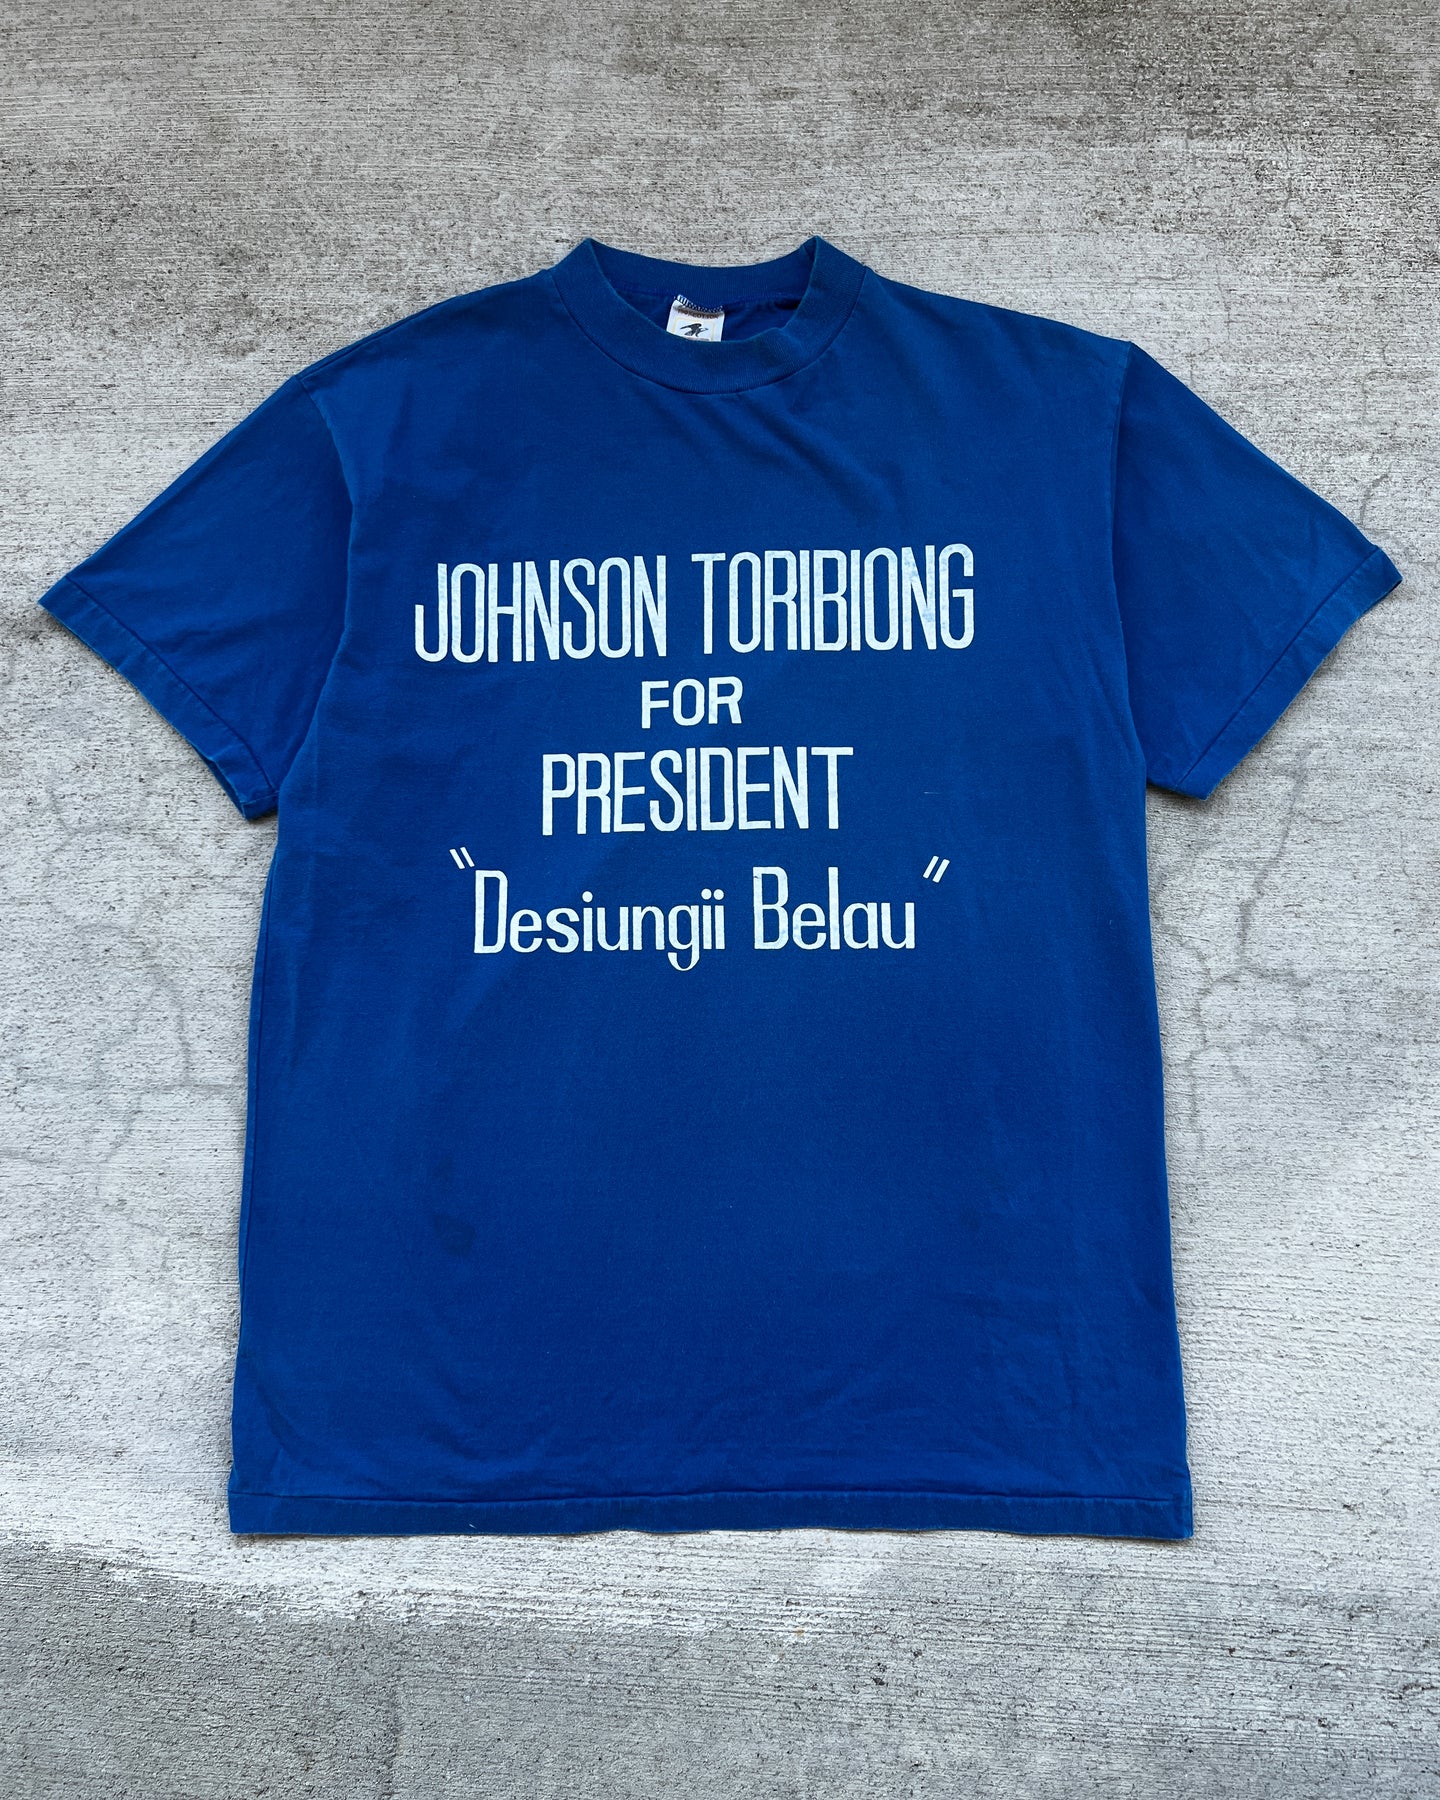 1990s Johnson Toribiong Single Stitch Tee - Size Large